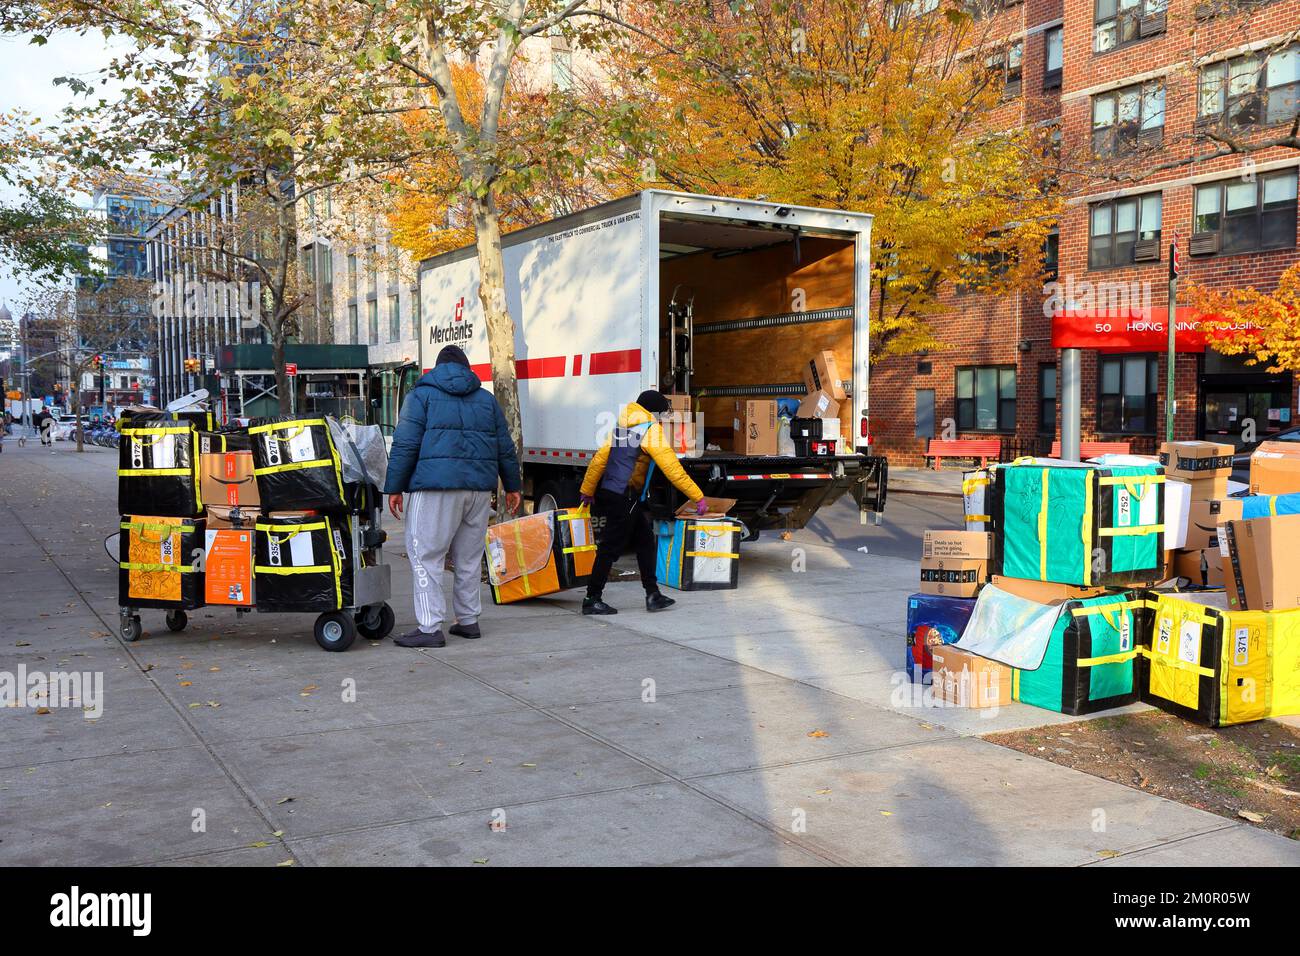 Emballage de livraison Amazon Last Mile trié sur un trottoir de la ville de New York. Merchants Fleet est une société de gestion de parc. Banque D'Images